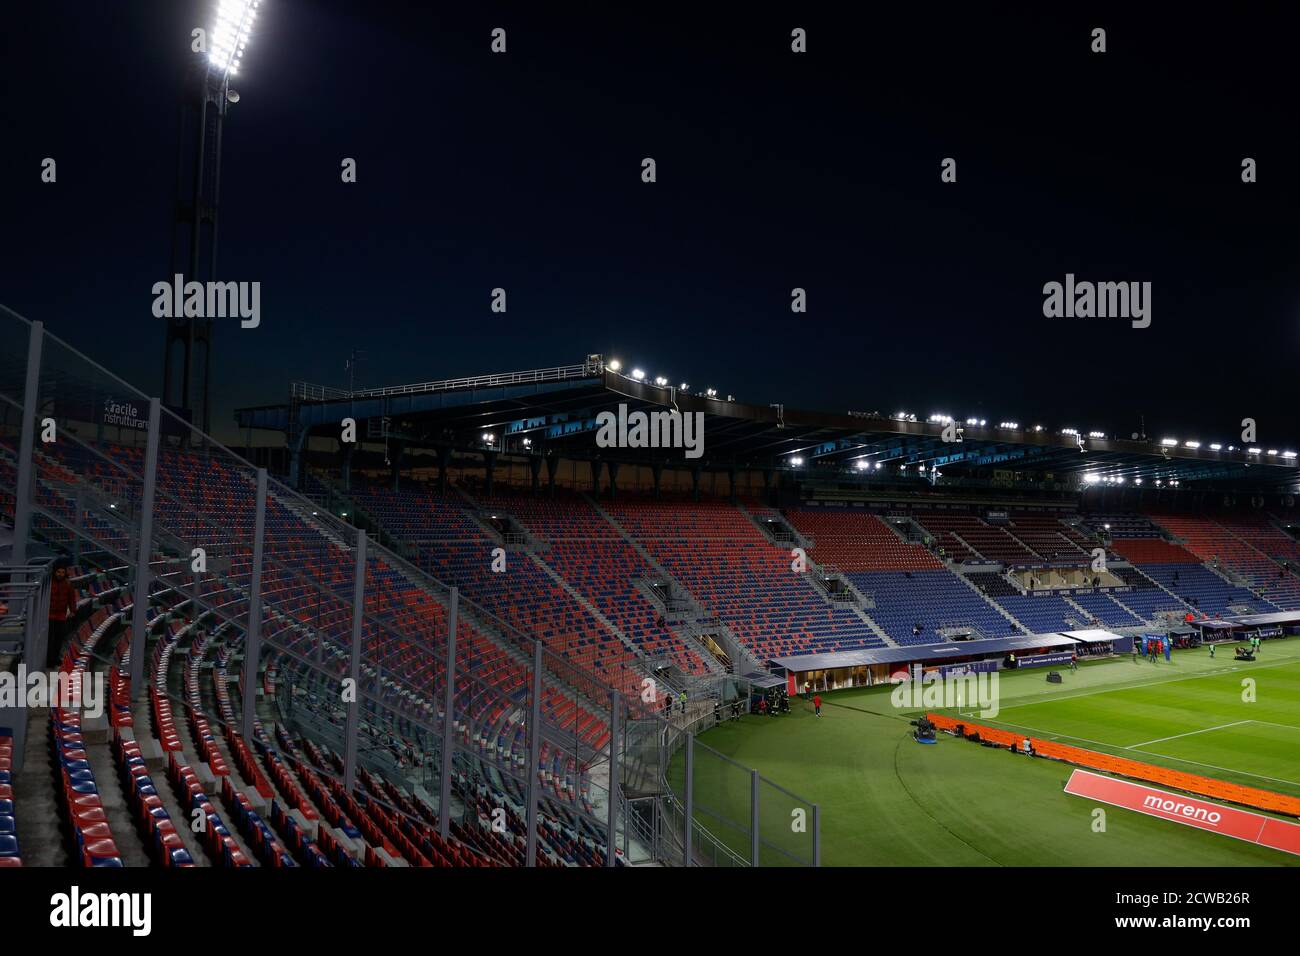 Stadio renato dallara immagini e fotografie stock ad alta risoluzione -  Alamy